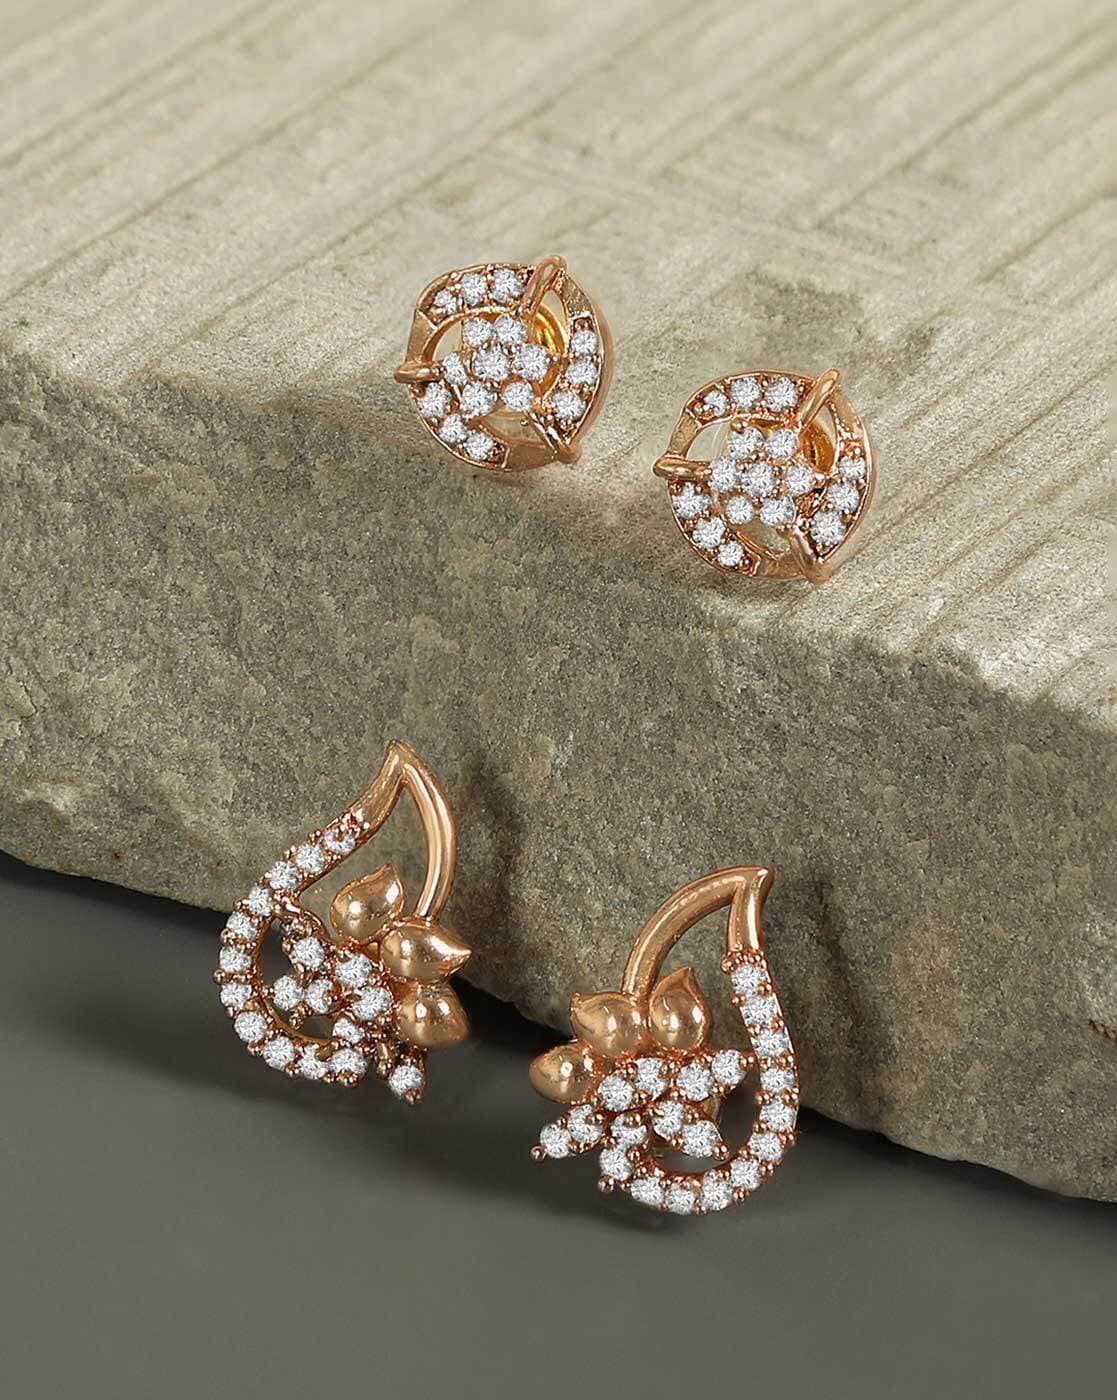 Pink Small stud Earrings  Workwear Jewellery  Amy Rose Gold Stud Earrings  by Blingvine